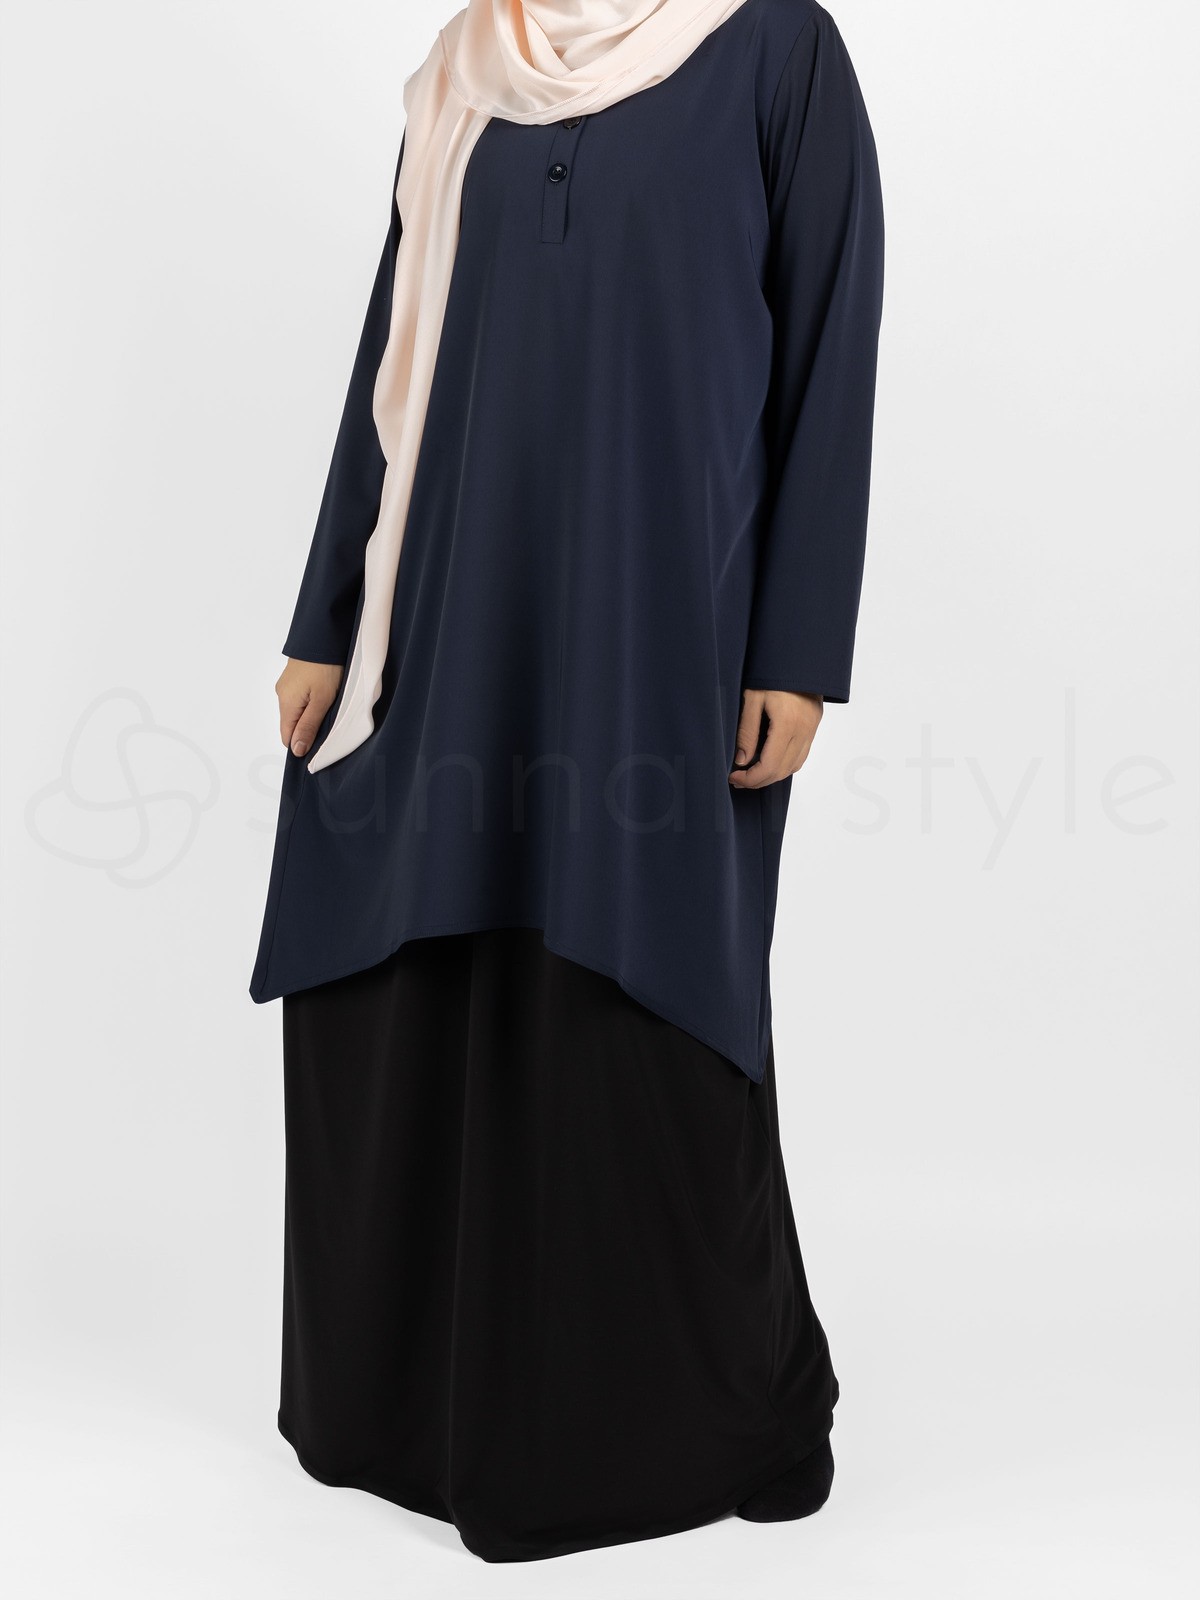 Sunnah Style - Avant Abaya Top (Navy Blue)